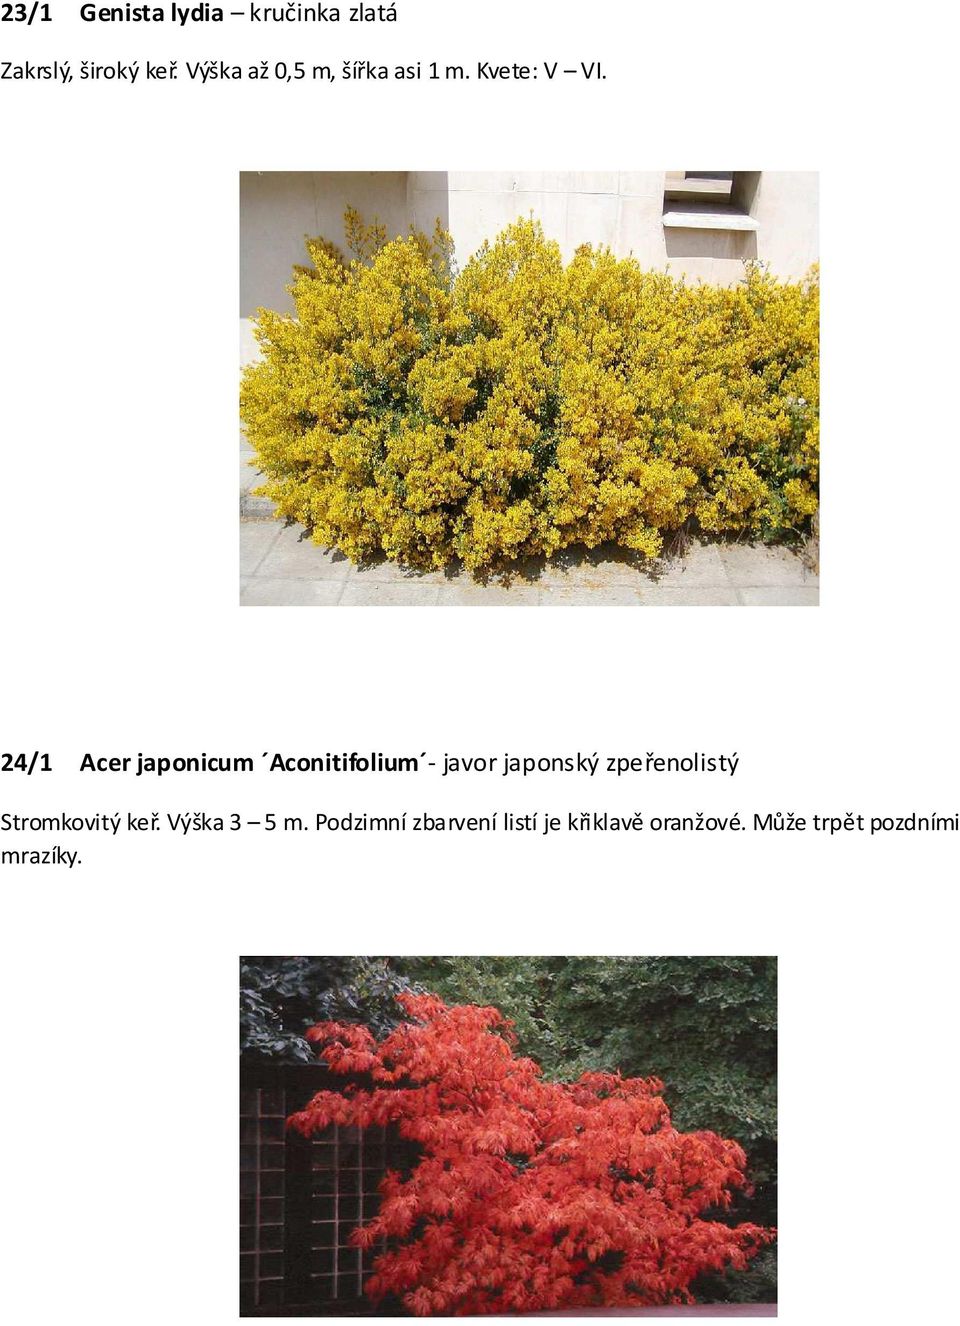 24/1 Acer japonicum Aconitifolium - javor japonský zpeřenolistý